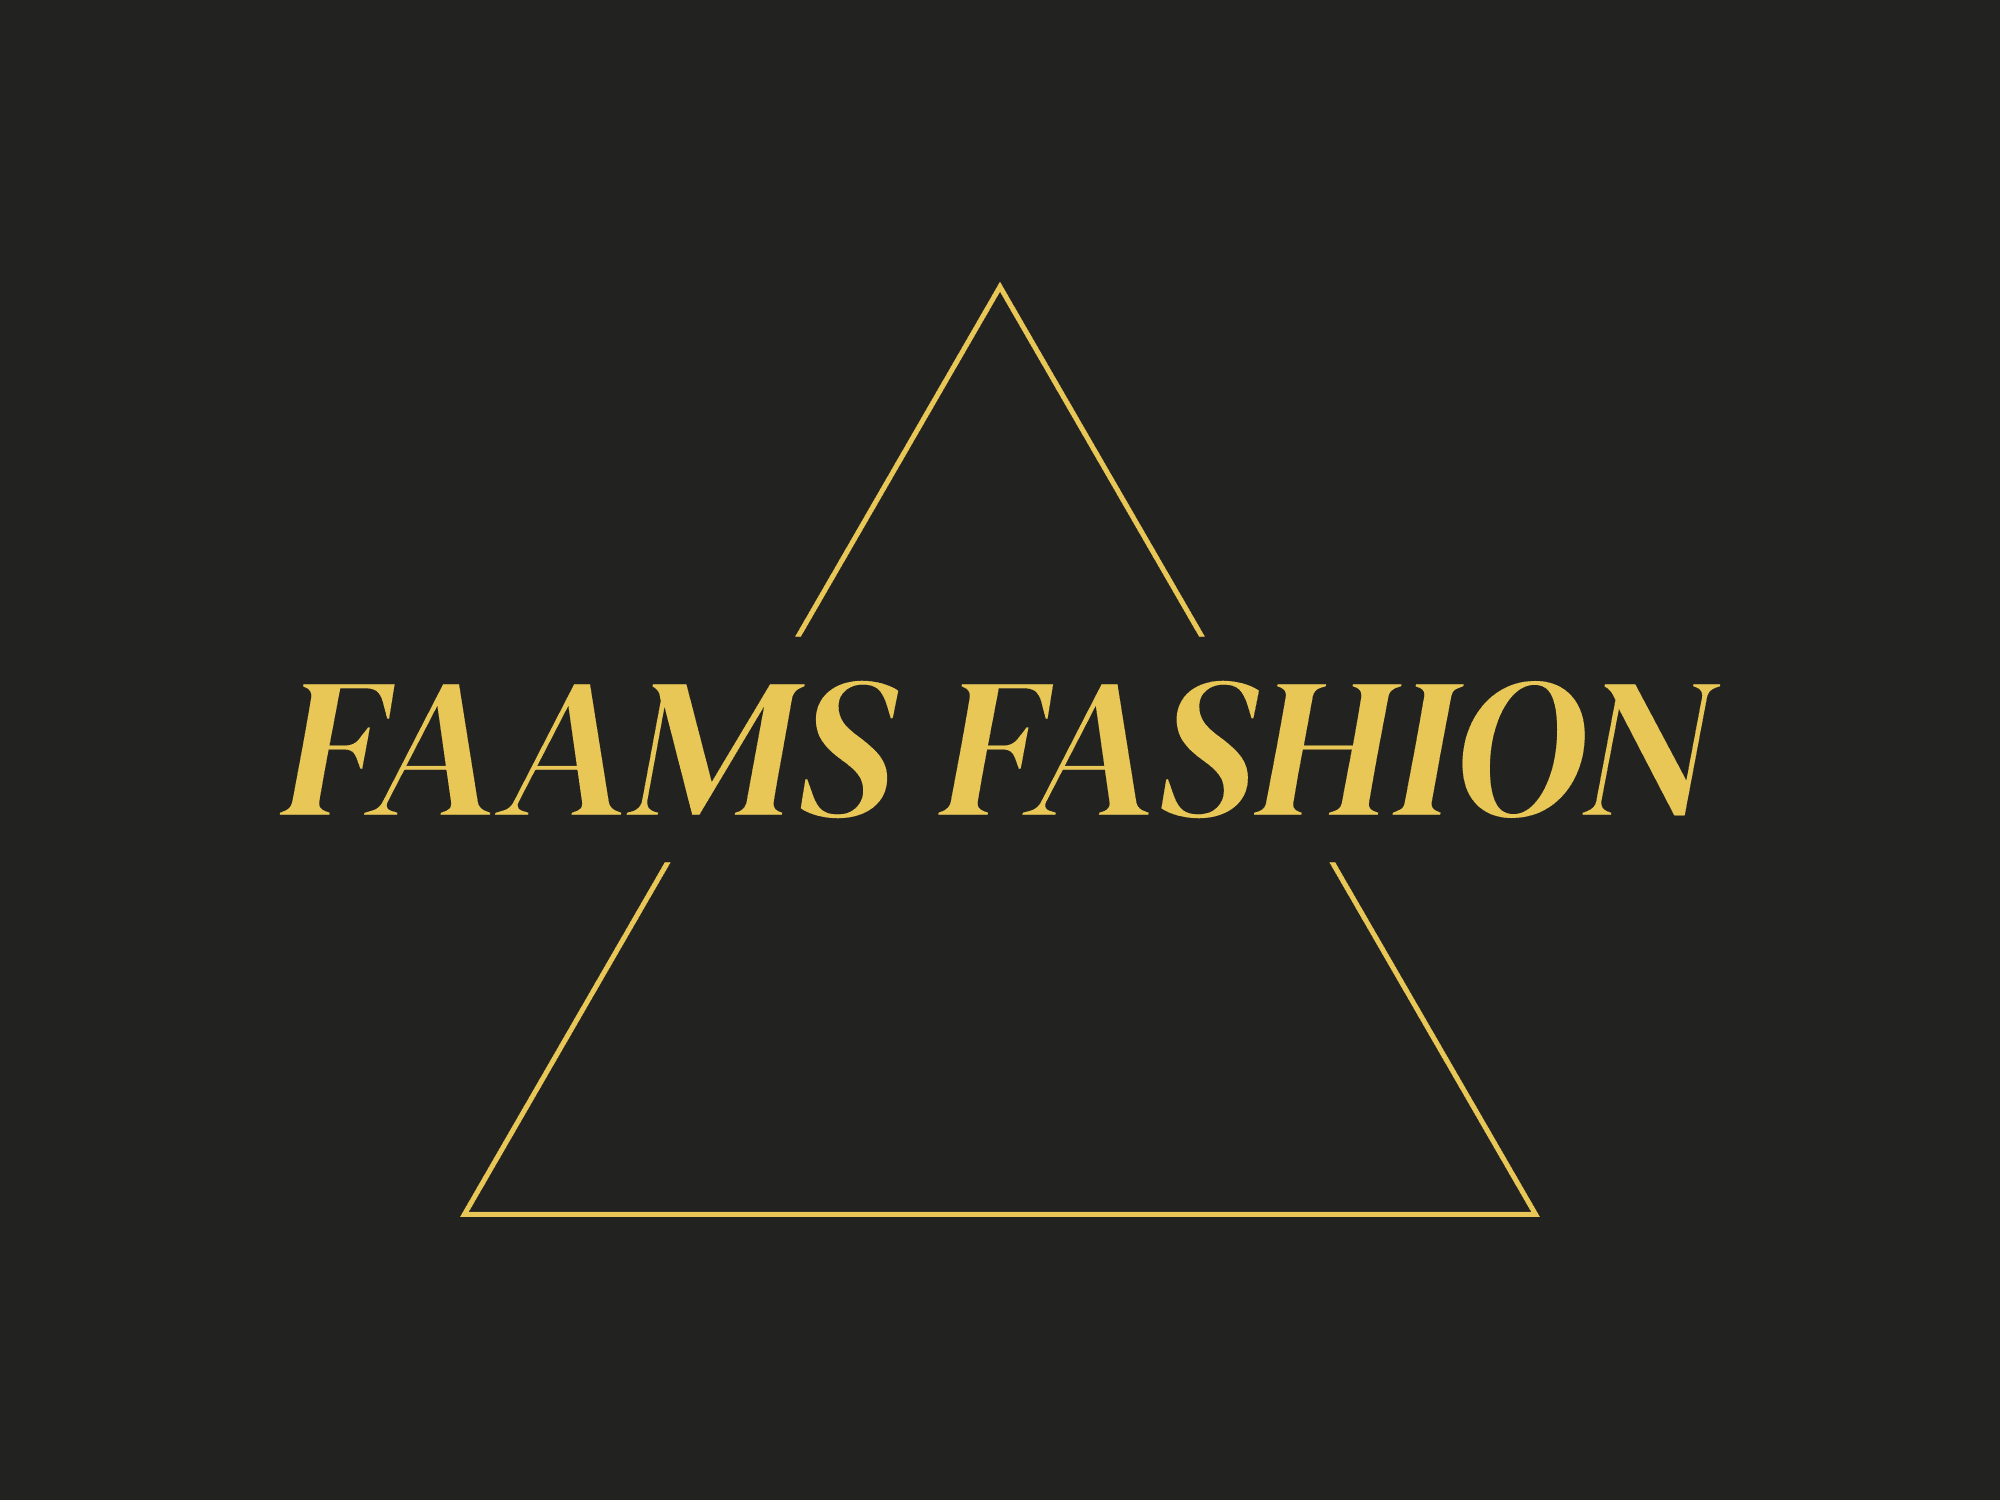 Faams Fashion